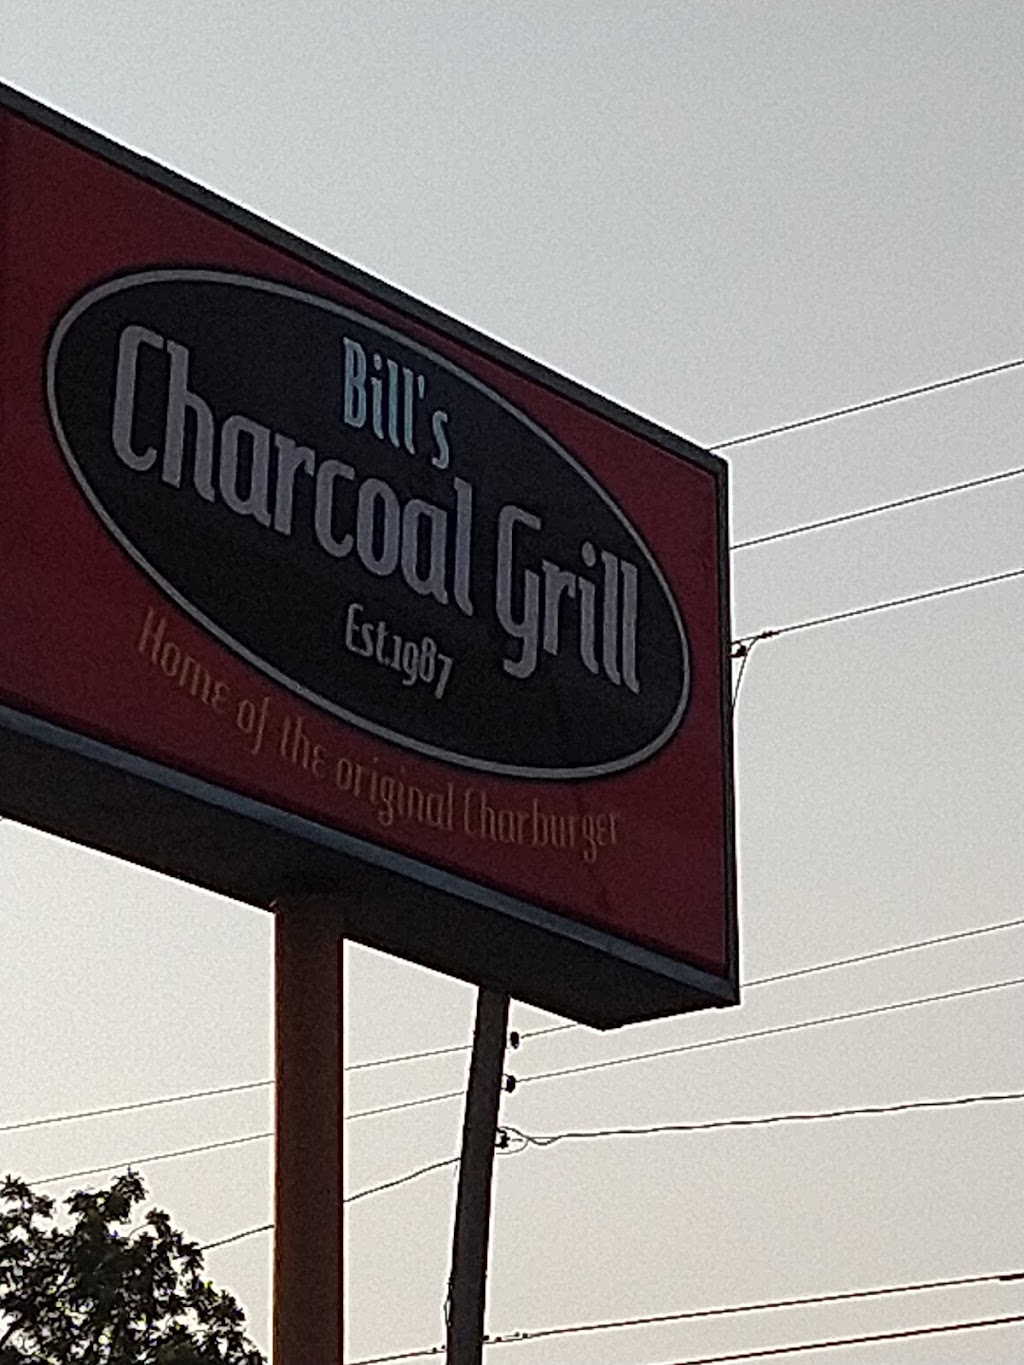 Bills Charcoal Grill | 2957 N Arkansas, Wichita, KS 67204, USA | Phone: (316) 832-0288